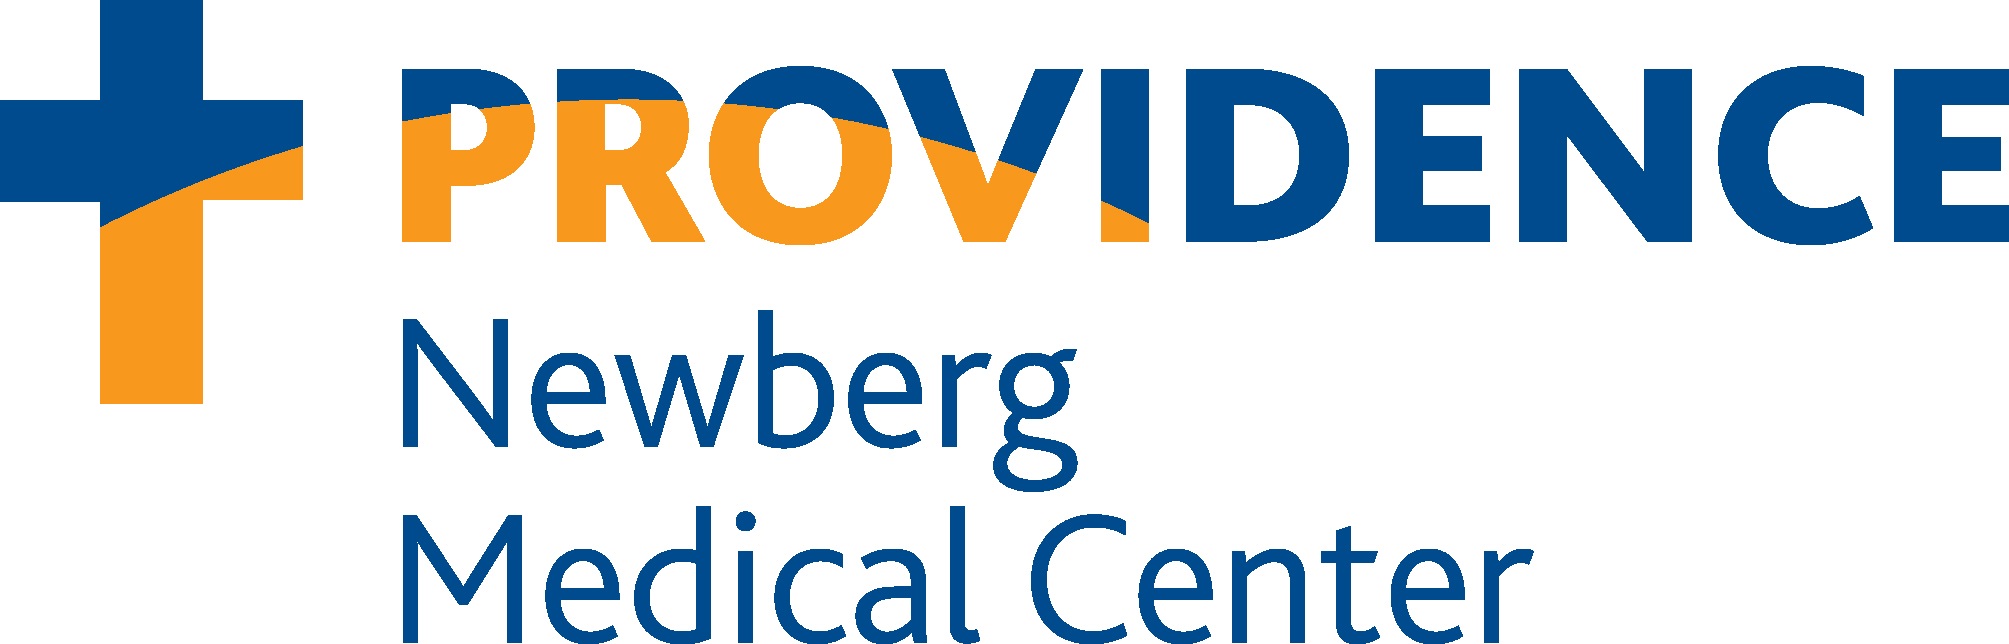 Providence Newberg Medical Center Logo